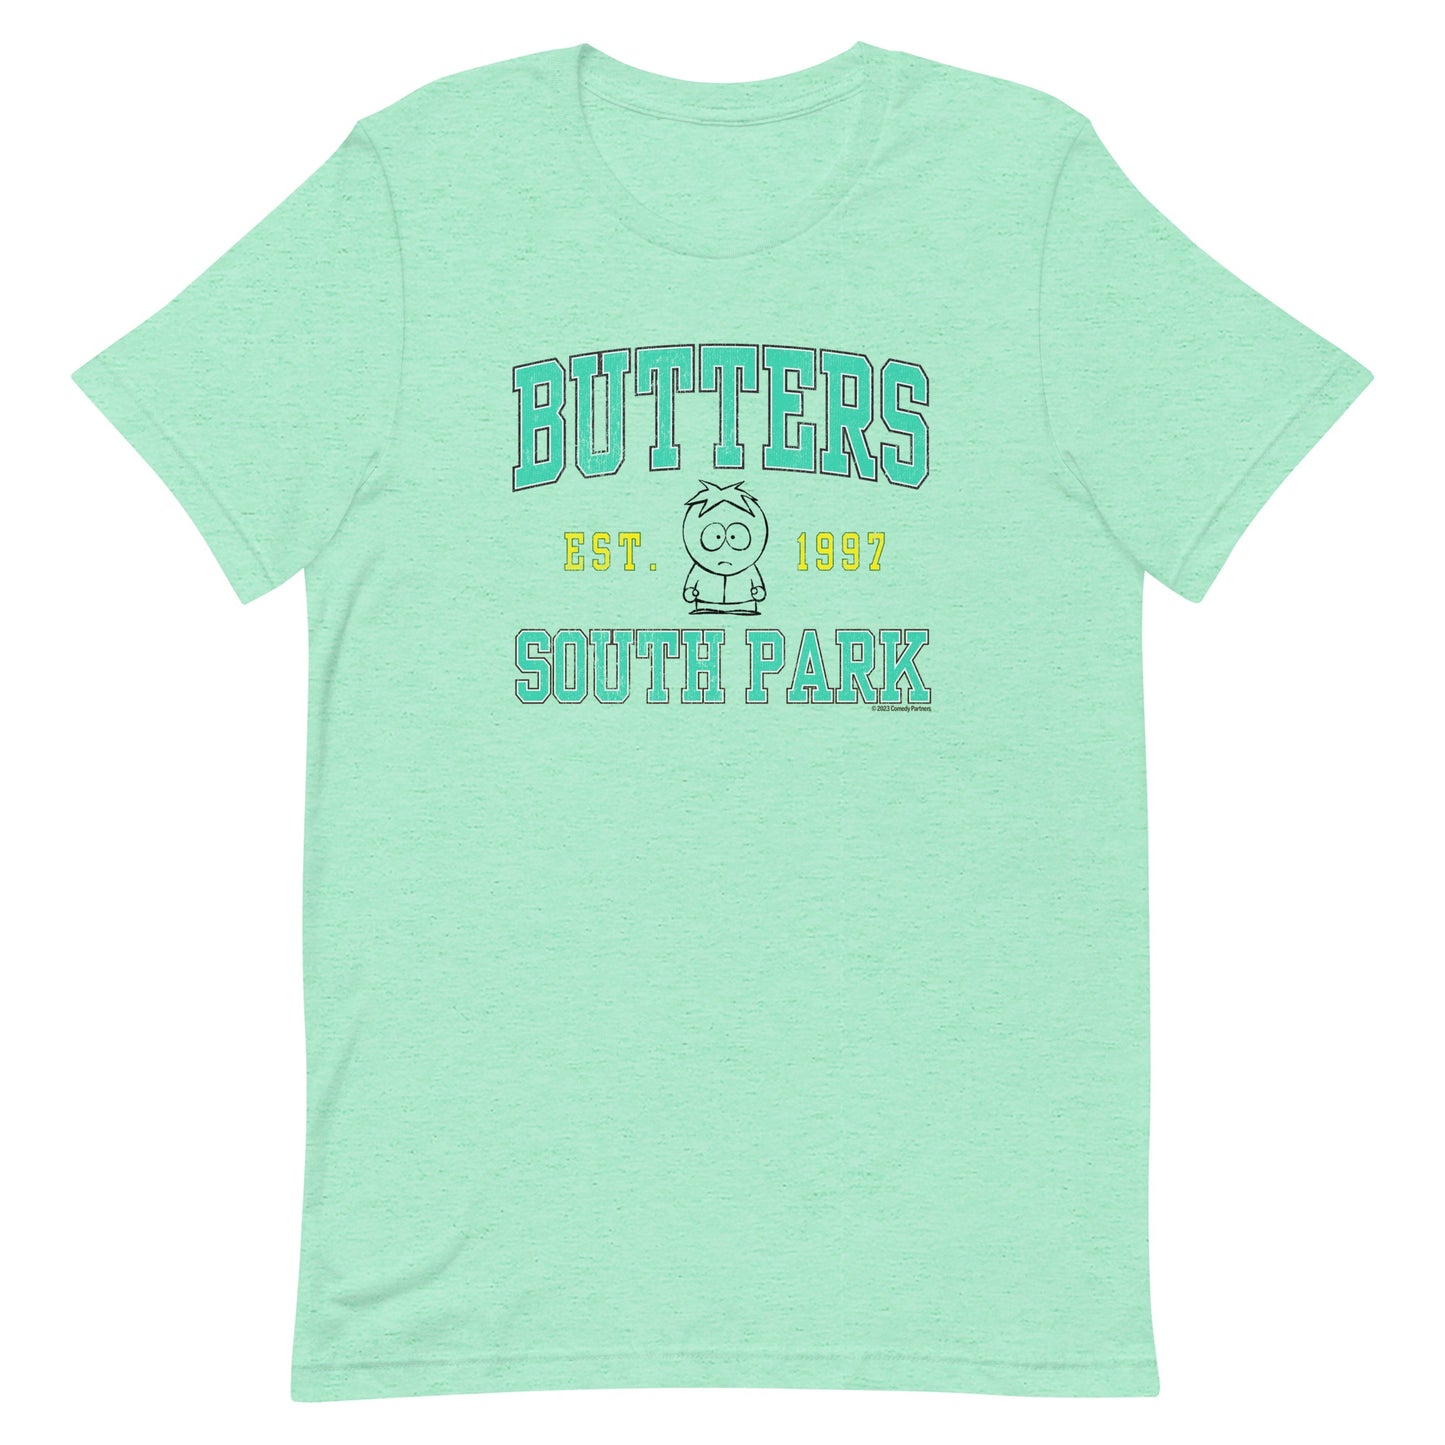 South Park T-Shirt collégial Butters